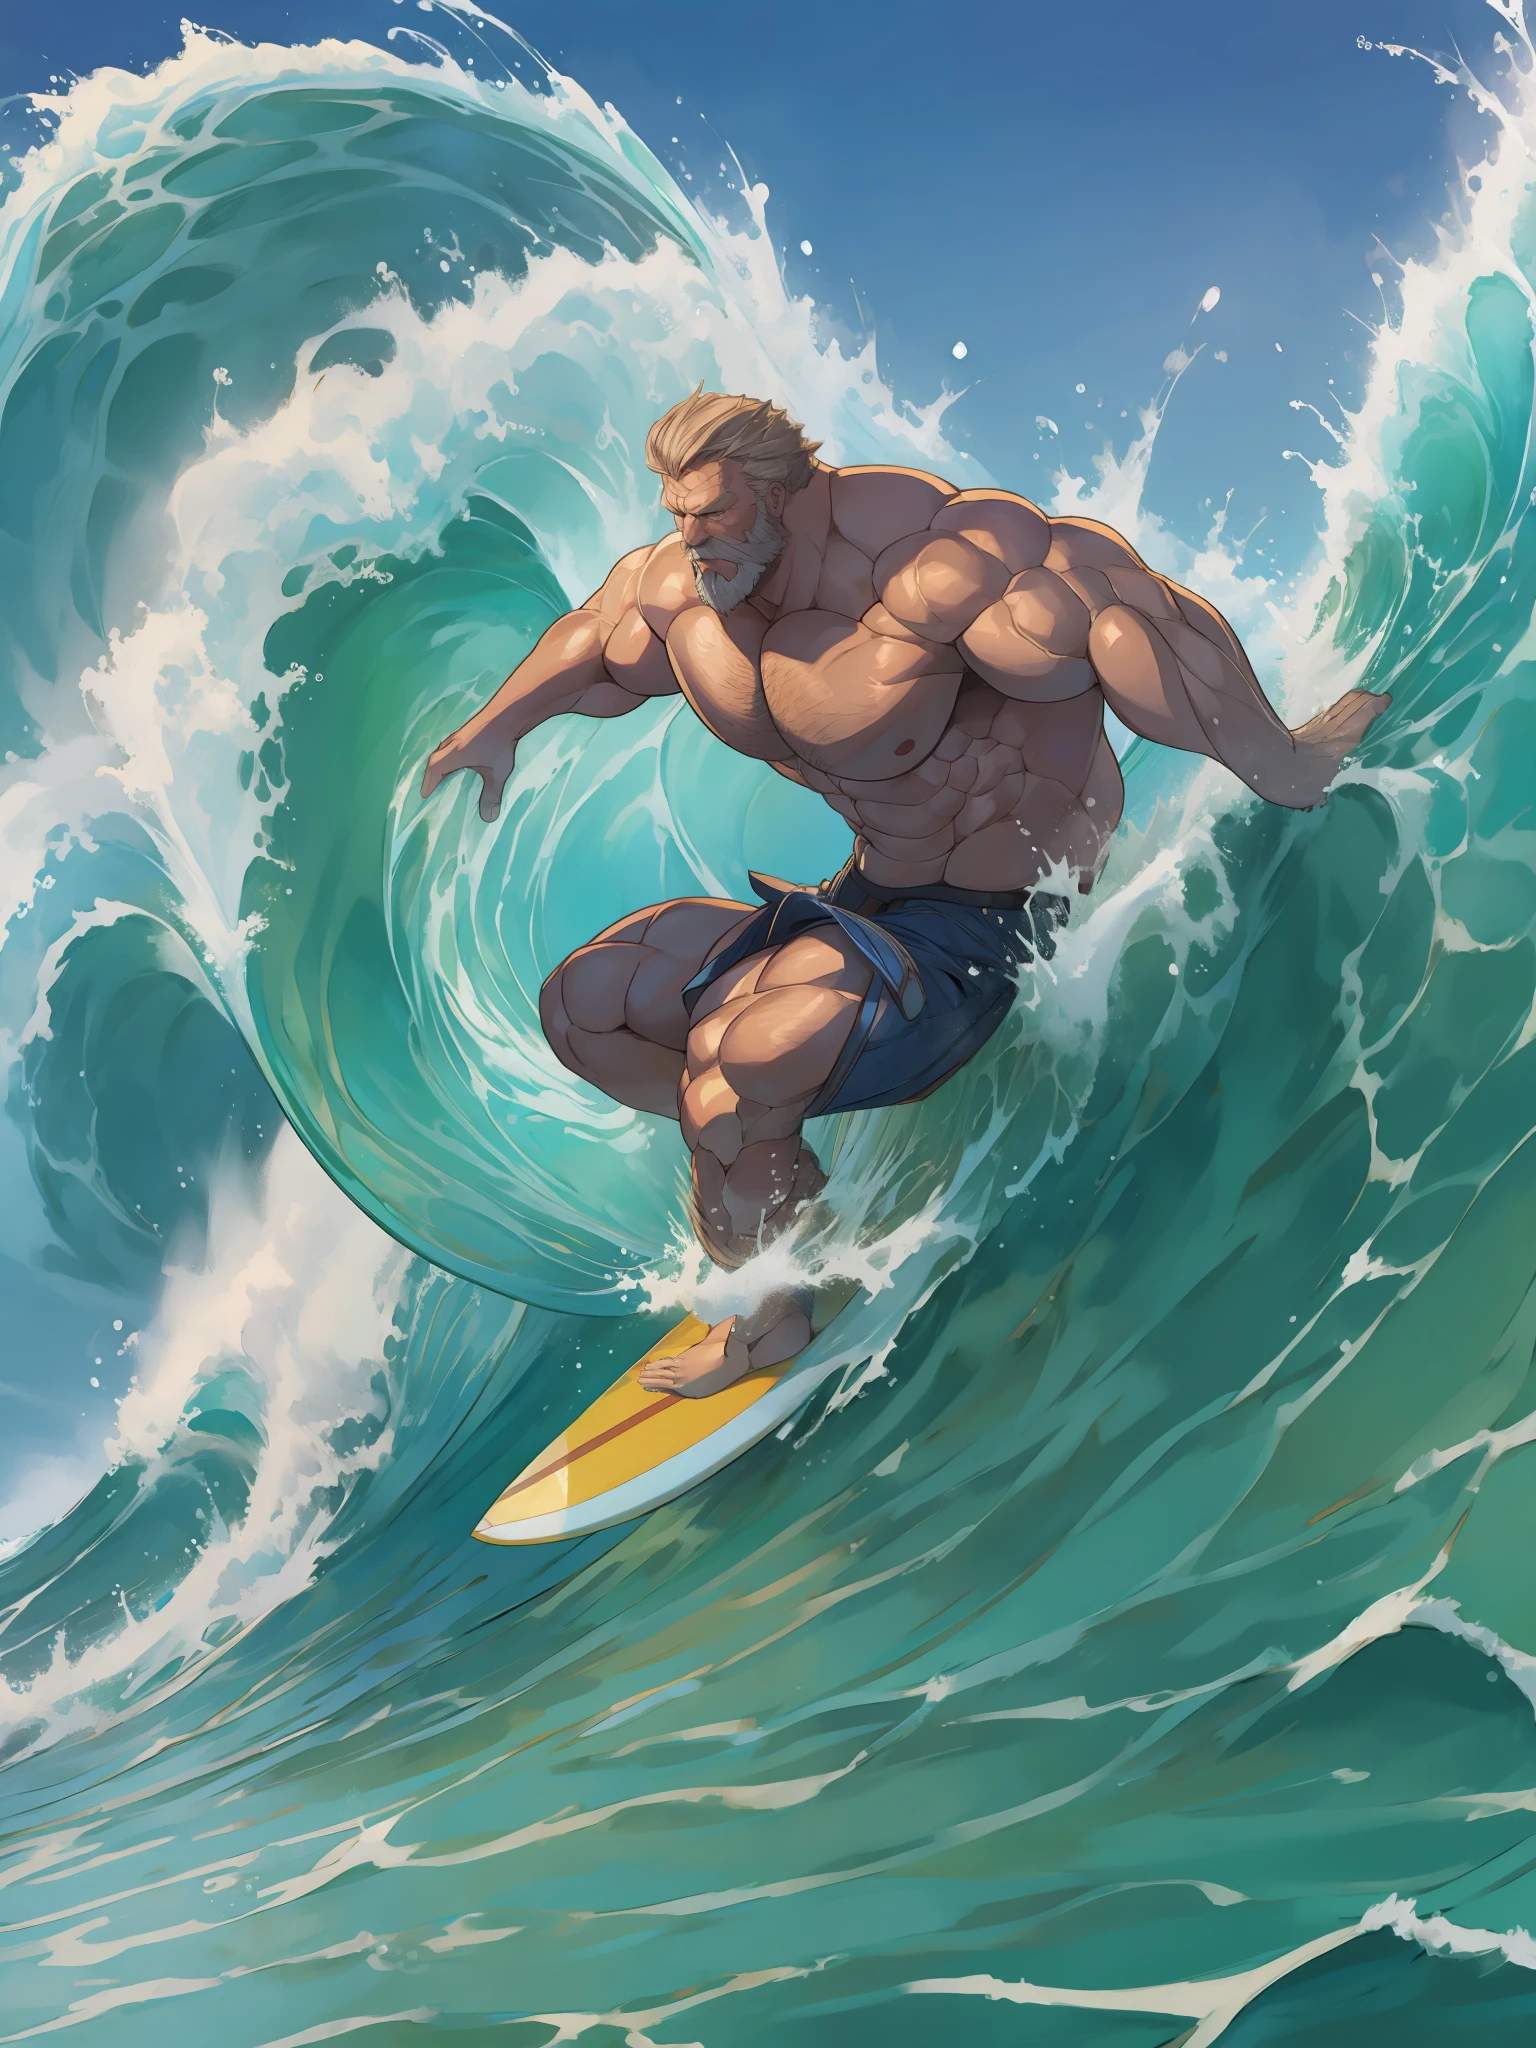 (vieil homme musclé chevauchant une puissante vague de surf)